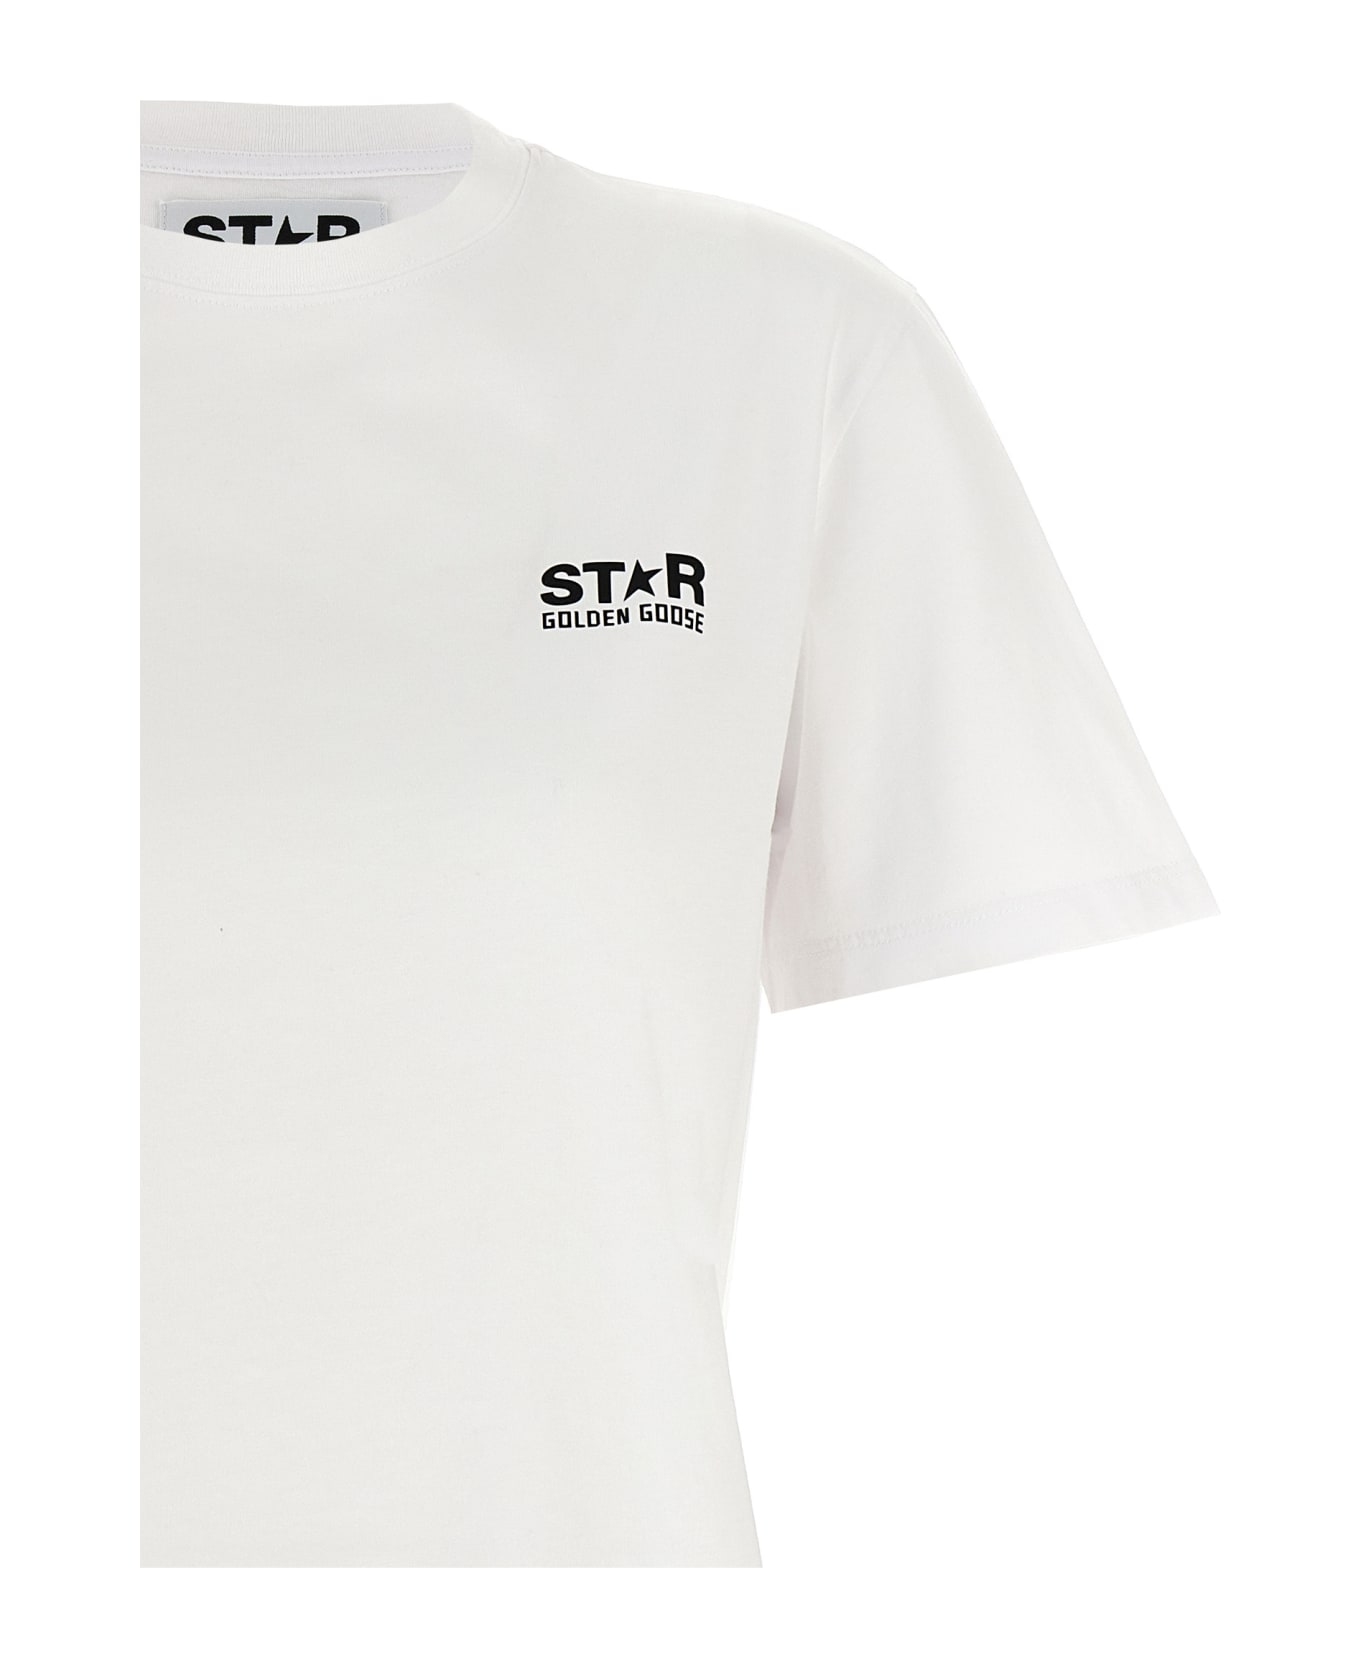 Golden Goose 'star' T-shirt - White/Black